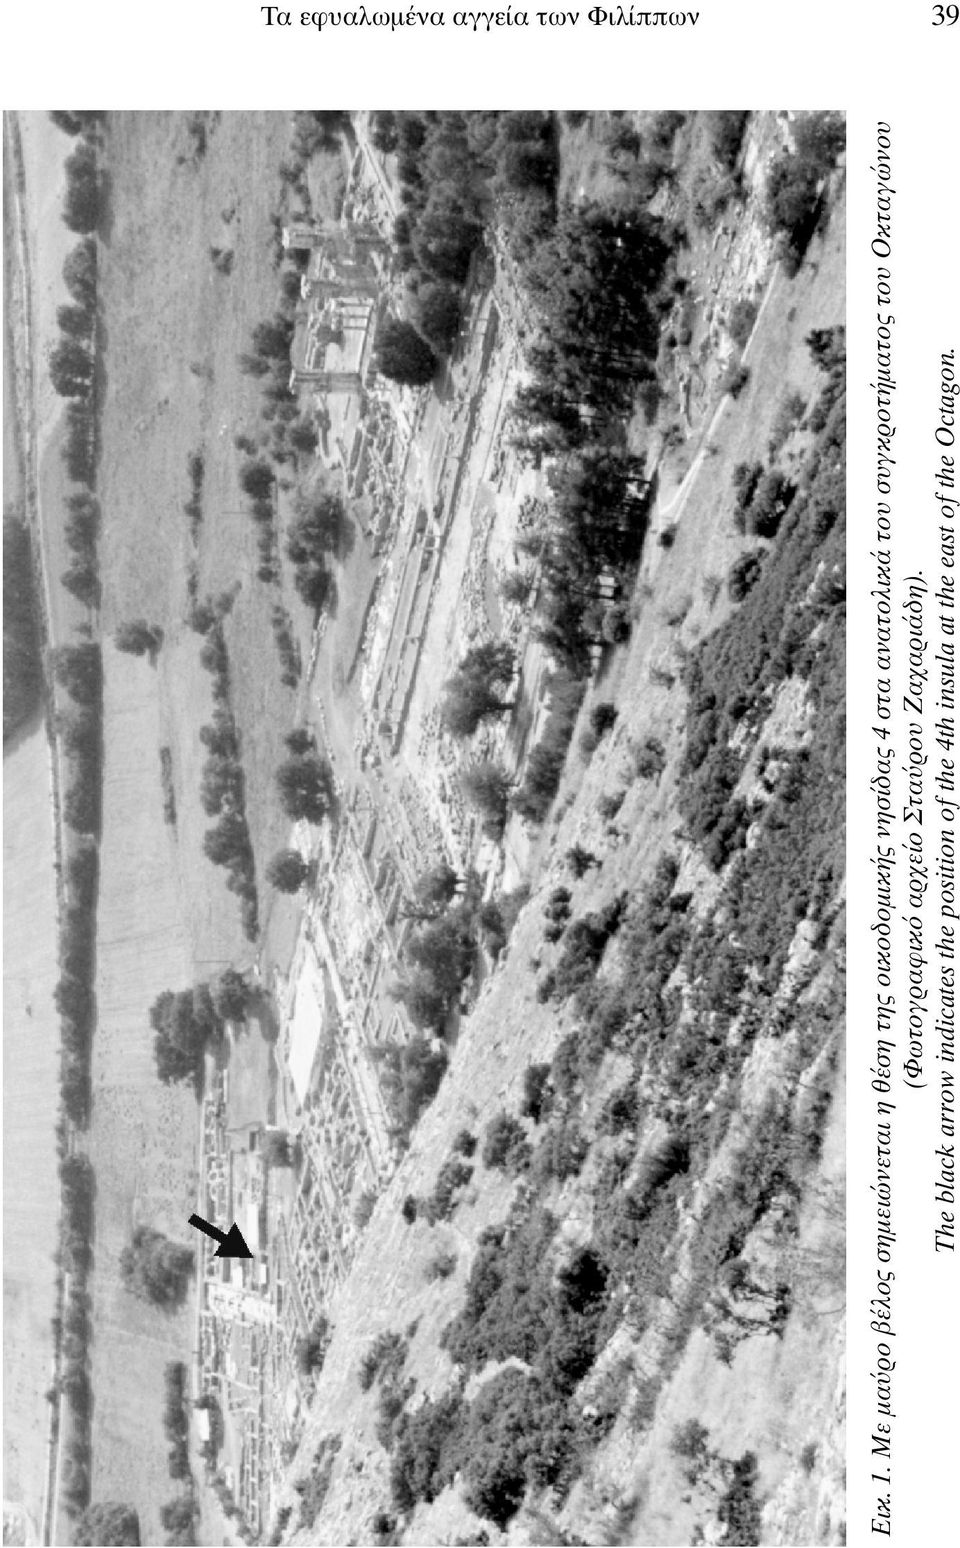 ανατολικά του συγκροτήµατος του Oκταγώνου (Φωτογραφικ αρχείο Στα ρου